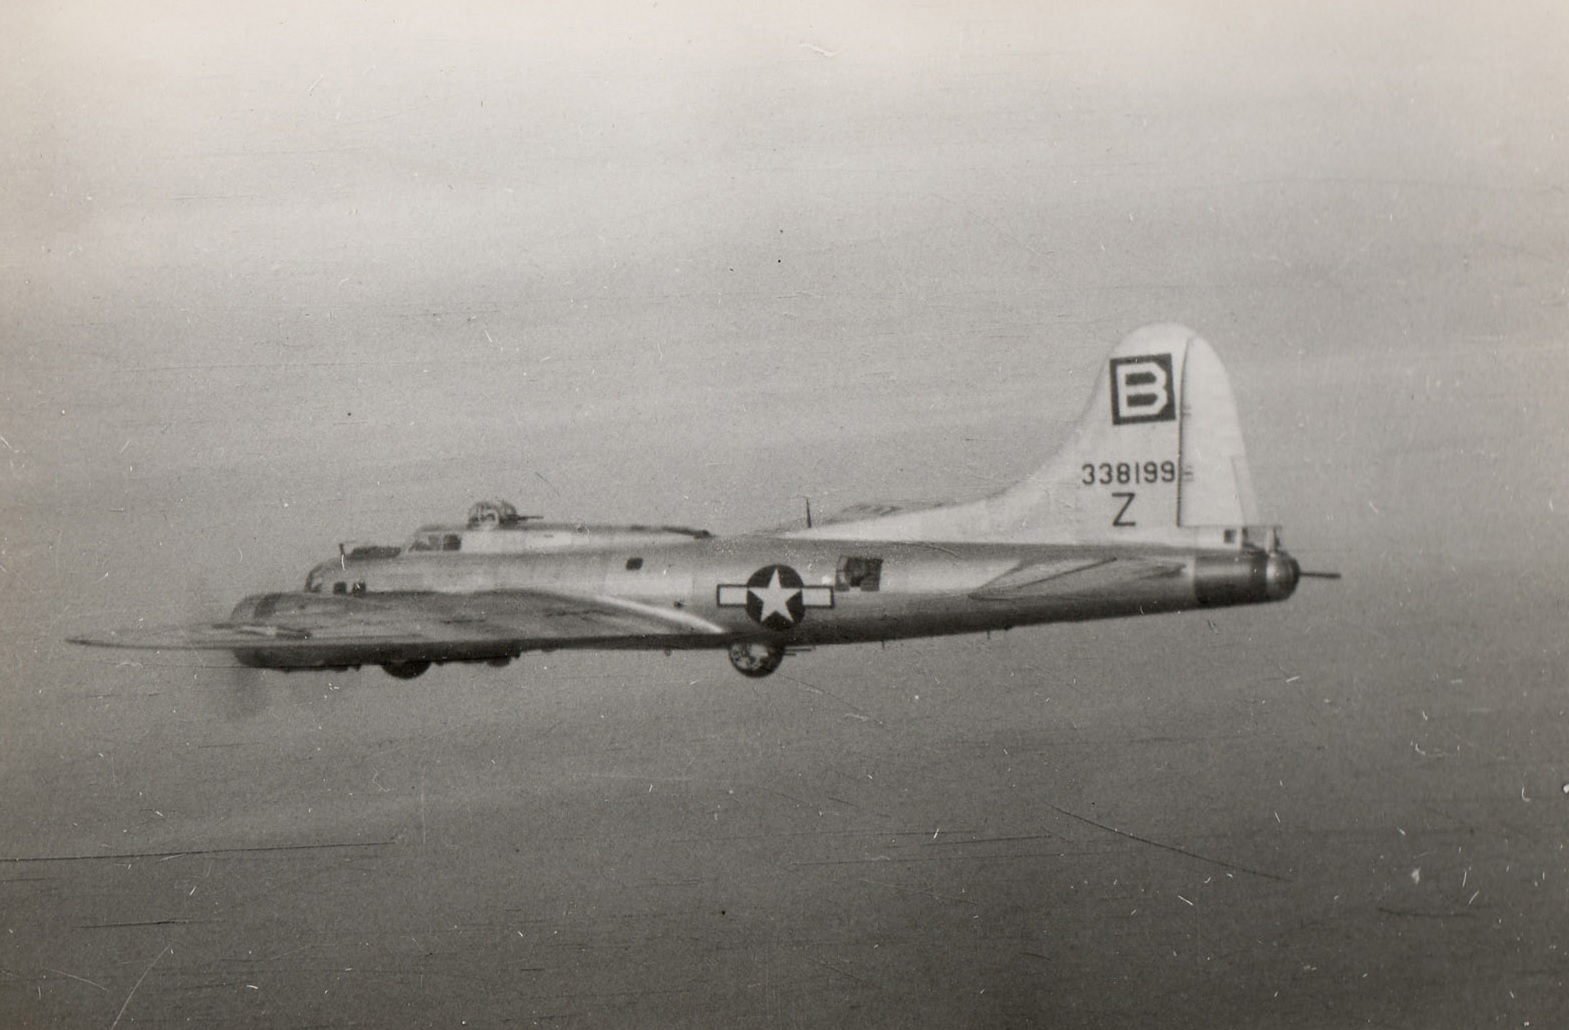 B-17 43-38199